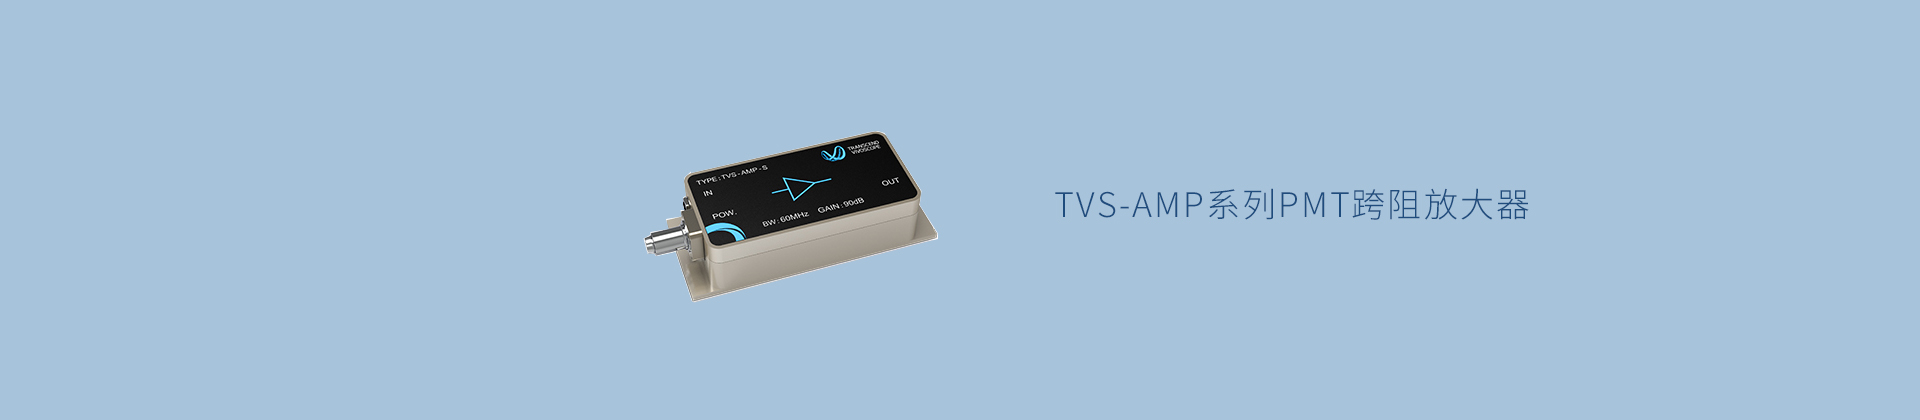 TVS-AMP系列PMT跨阻放大器